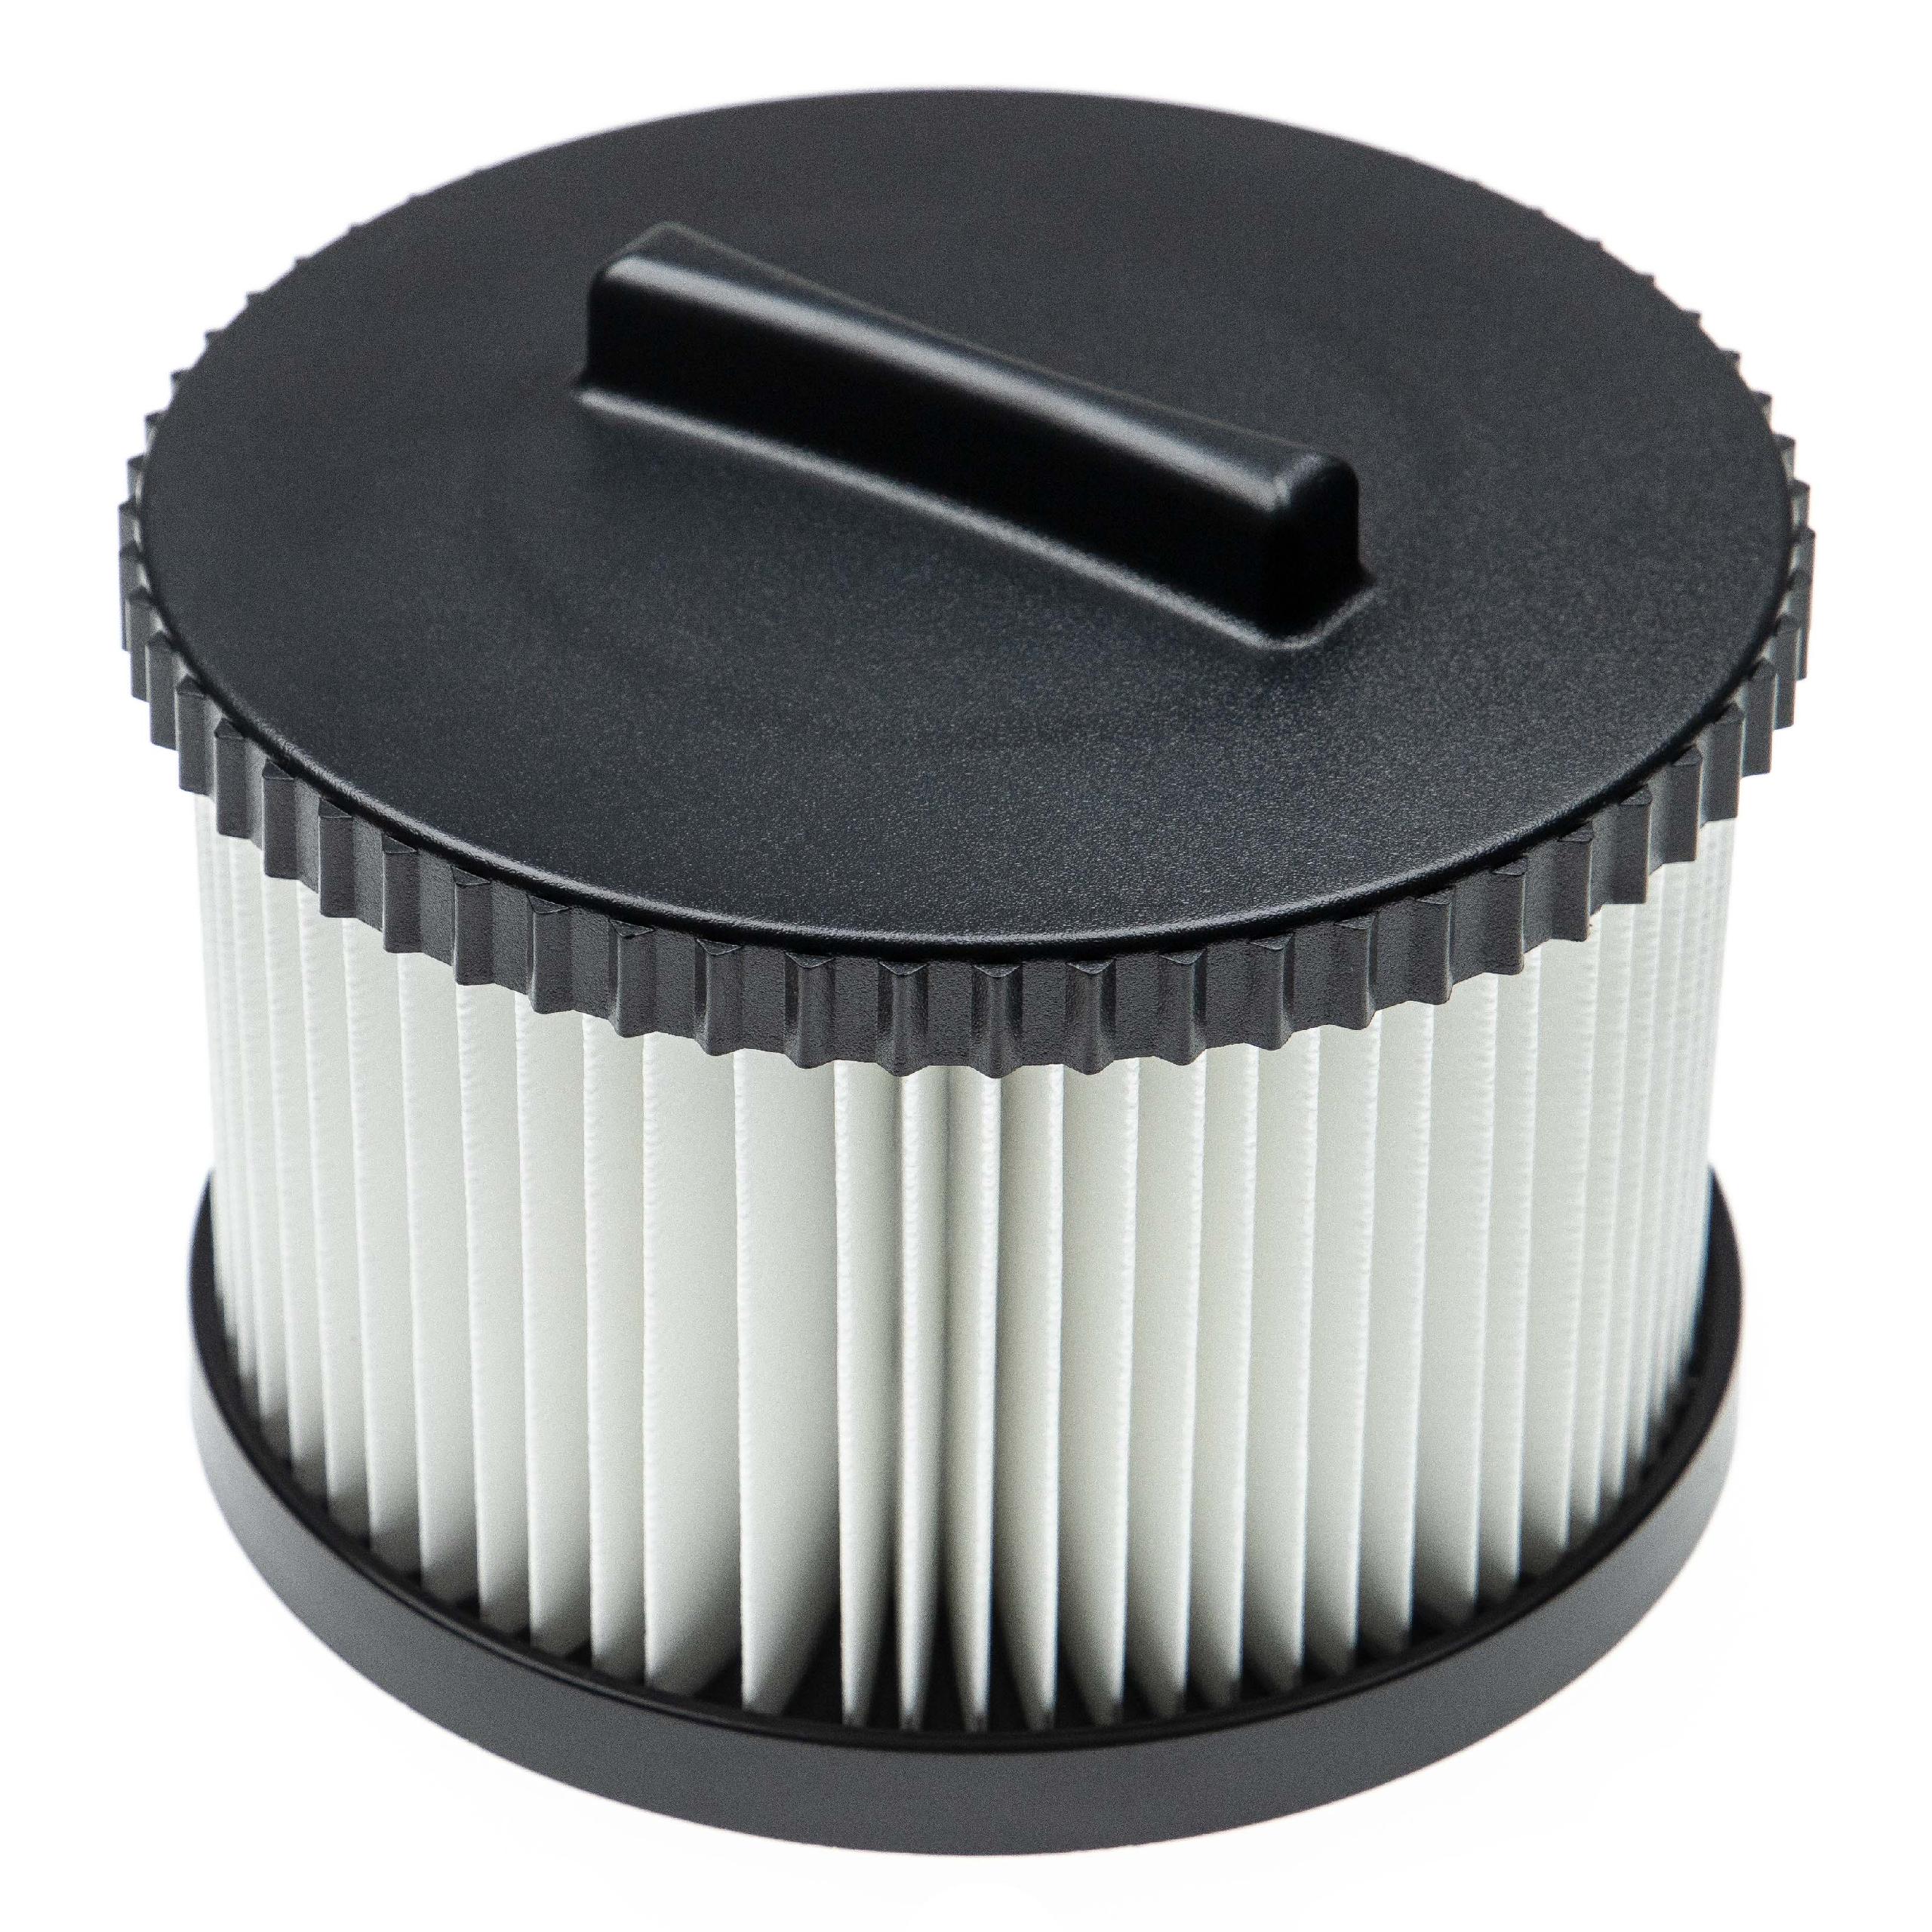 Filtro sostituisce Dewalt DWV9330 per aspirapolvere - filtro HEPA, nero / bianco